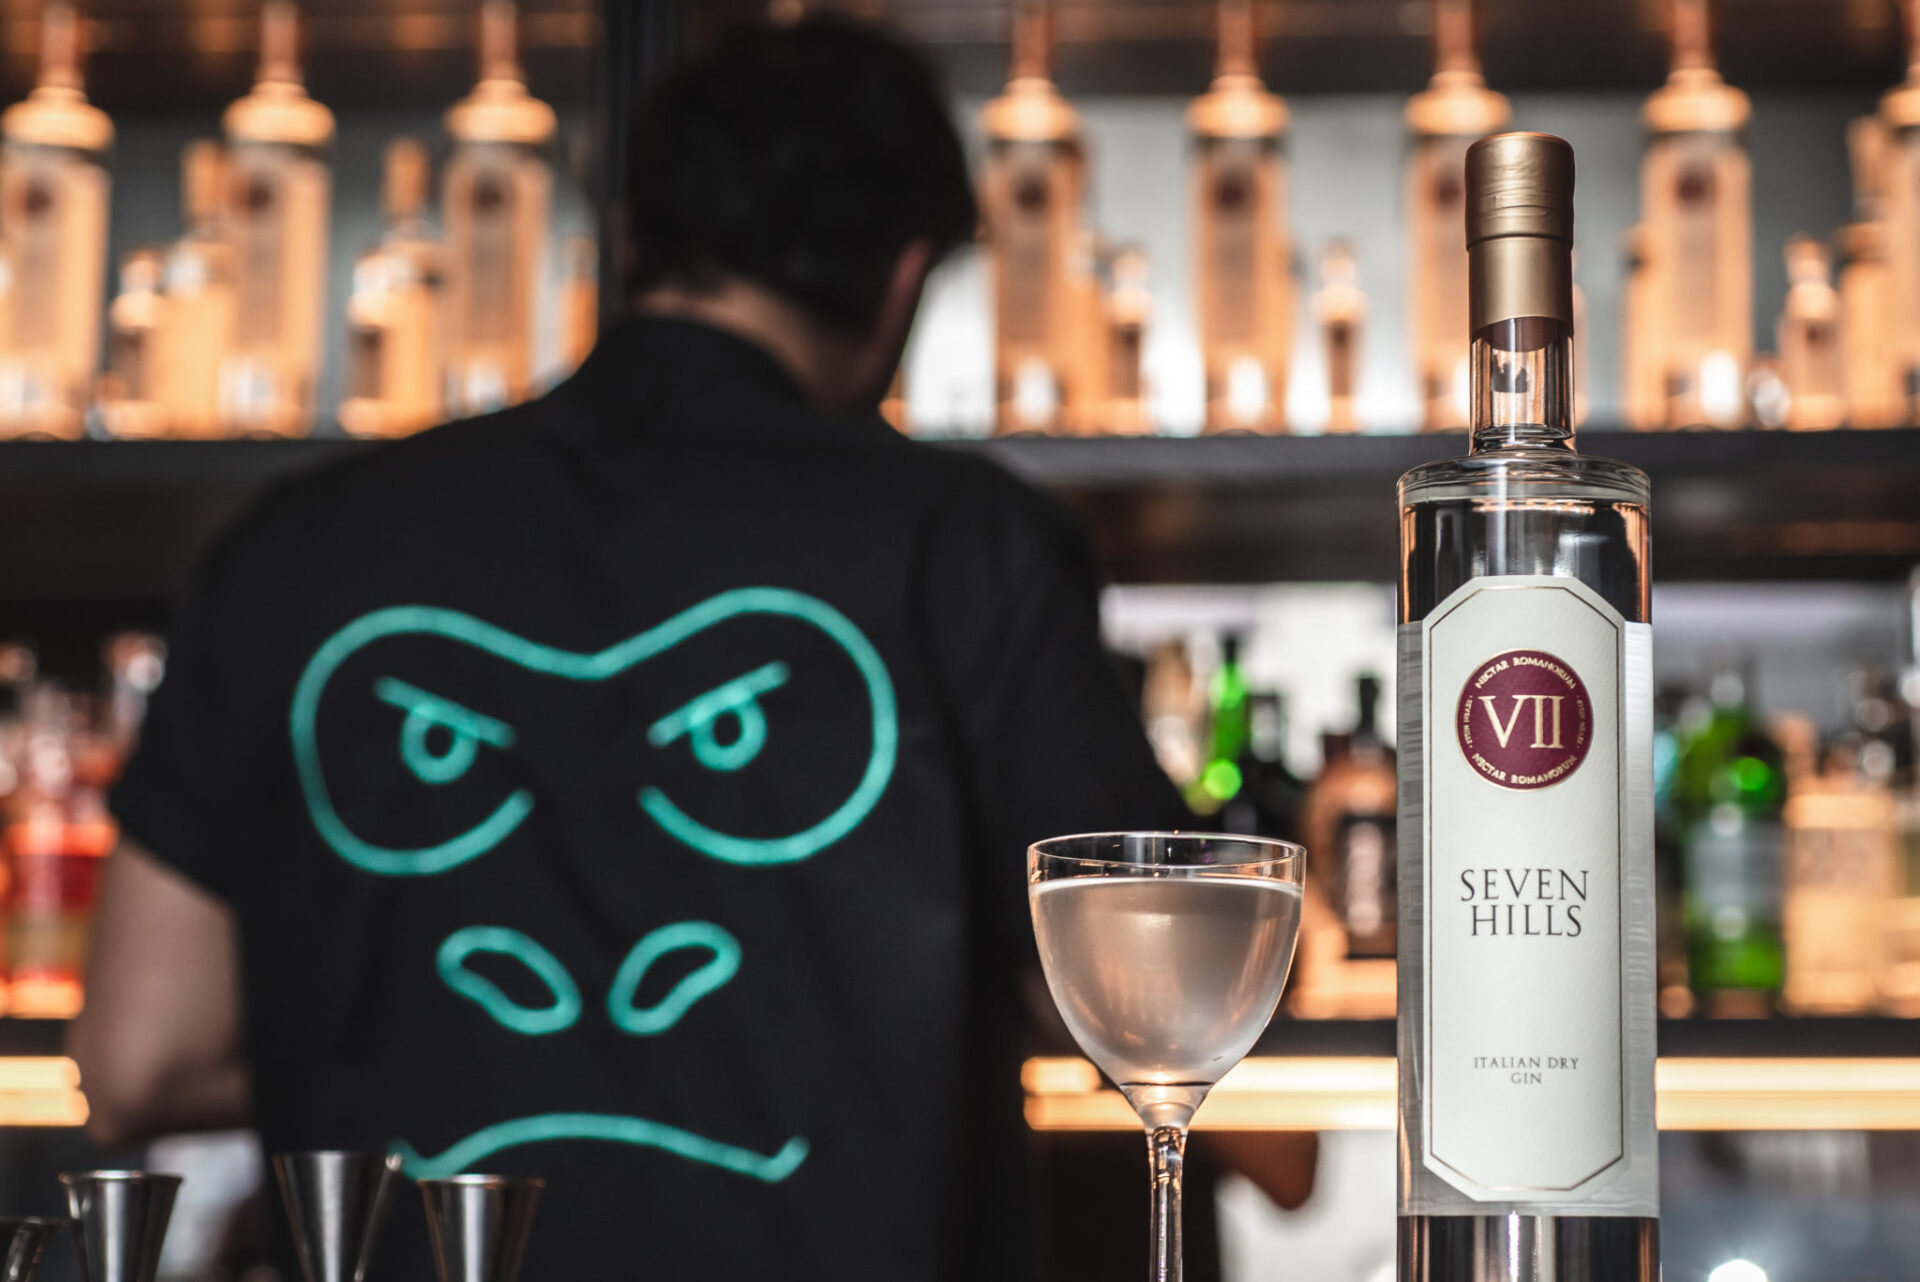 Il VII Hills Italian Dry Gin e il cocktail confidential al Drink Kong